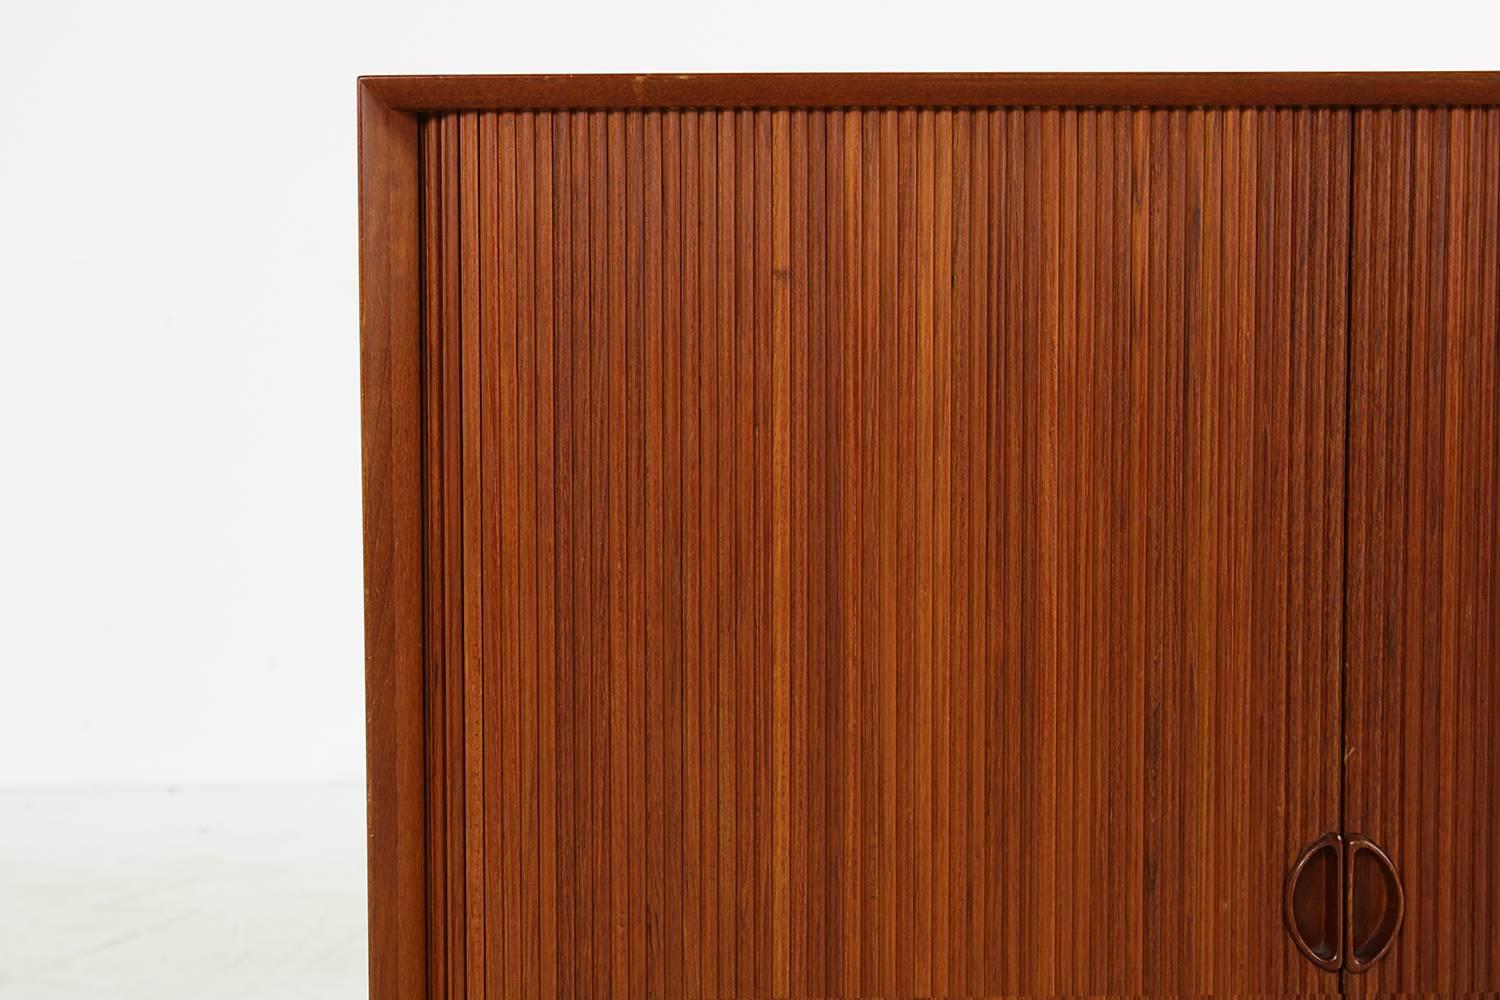 1960s Peter Hvidt Teak Cabinet with Tambour Doors Danish Modern Design Sideboard 1